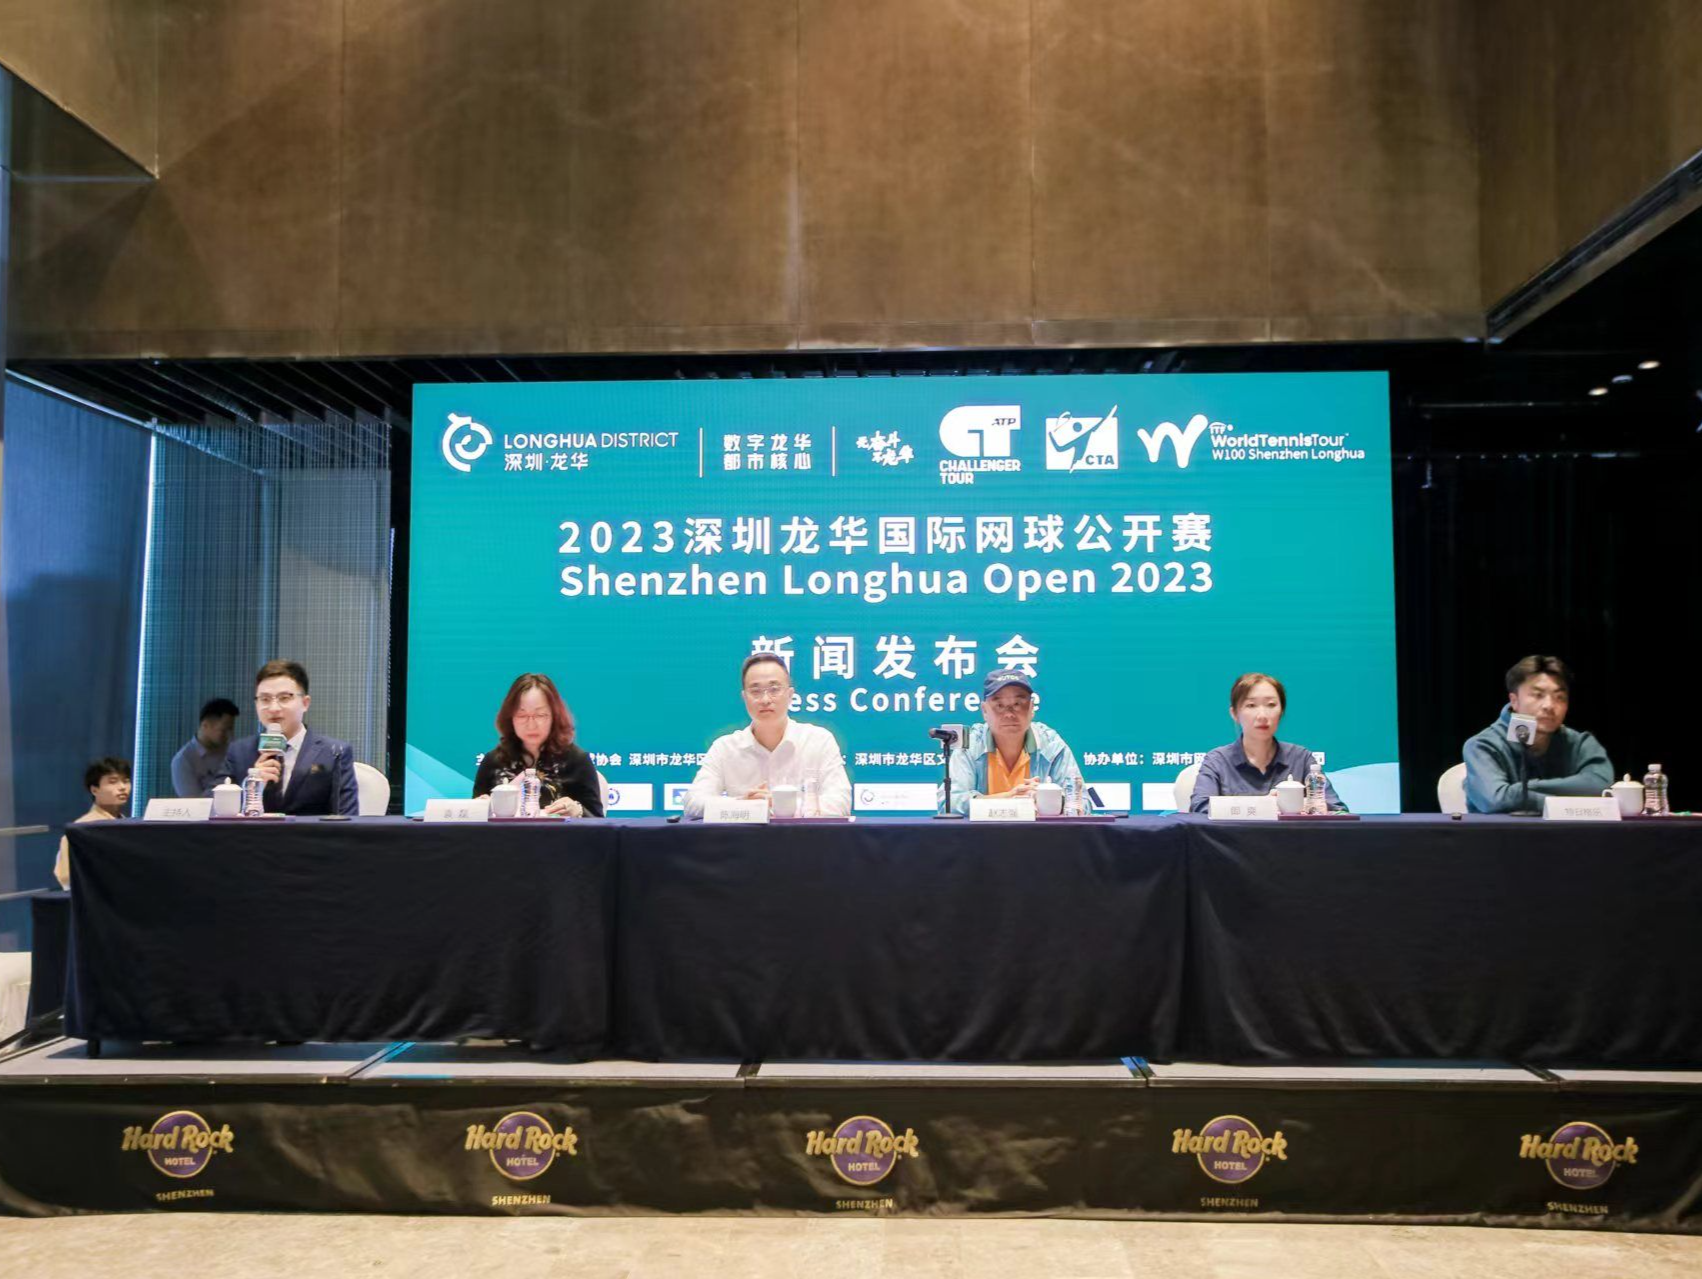 名将云集 重磅回归 2023深圳龙华国际网球公开赛9日开打